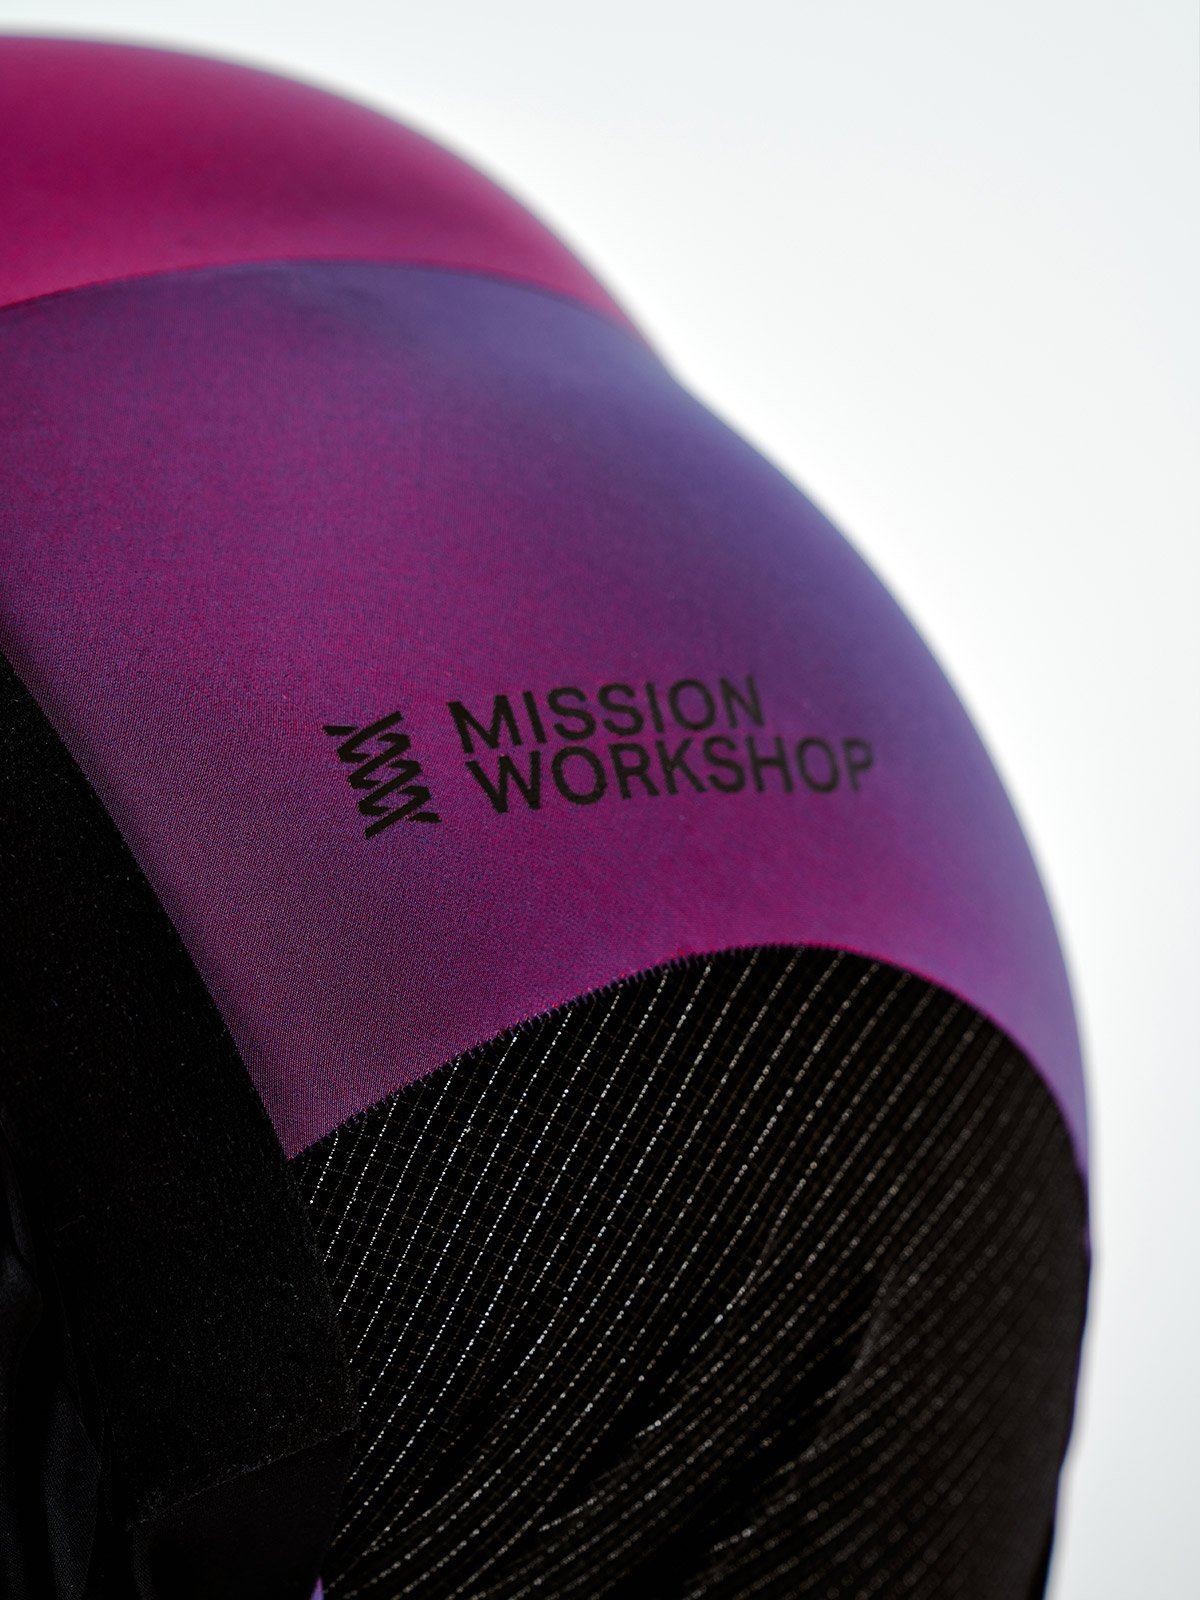 Mission Pro Bib Men's by Mission Workshop - Bolsas impermeables y ropa técnica - San Francisco & Los Angeles - Construido para durar - Garantizado para siempre